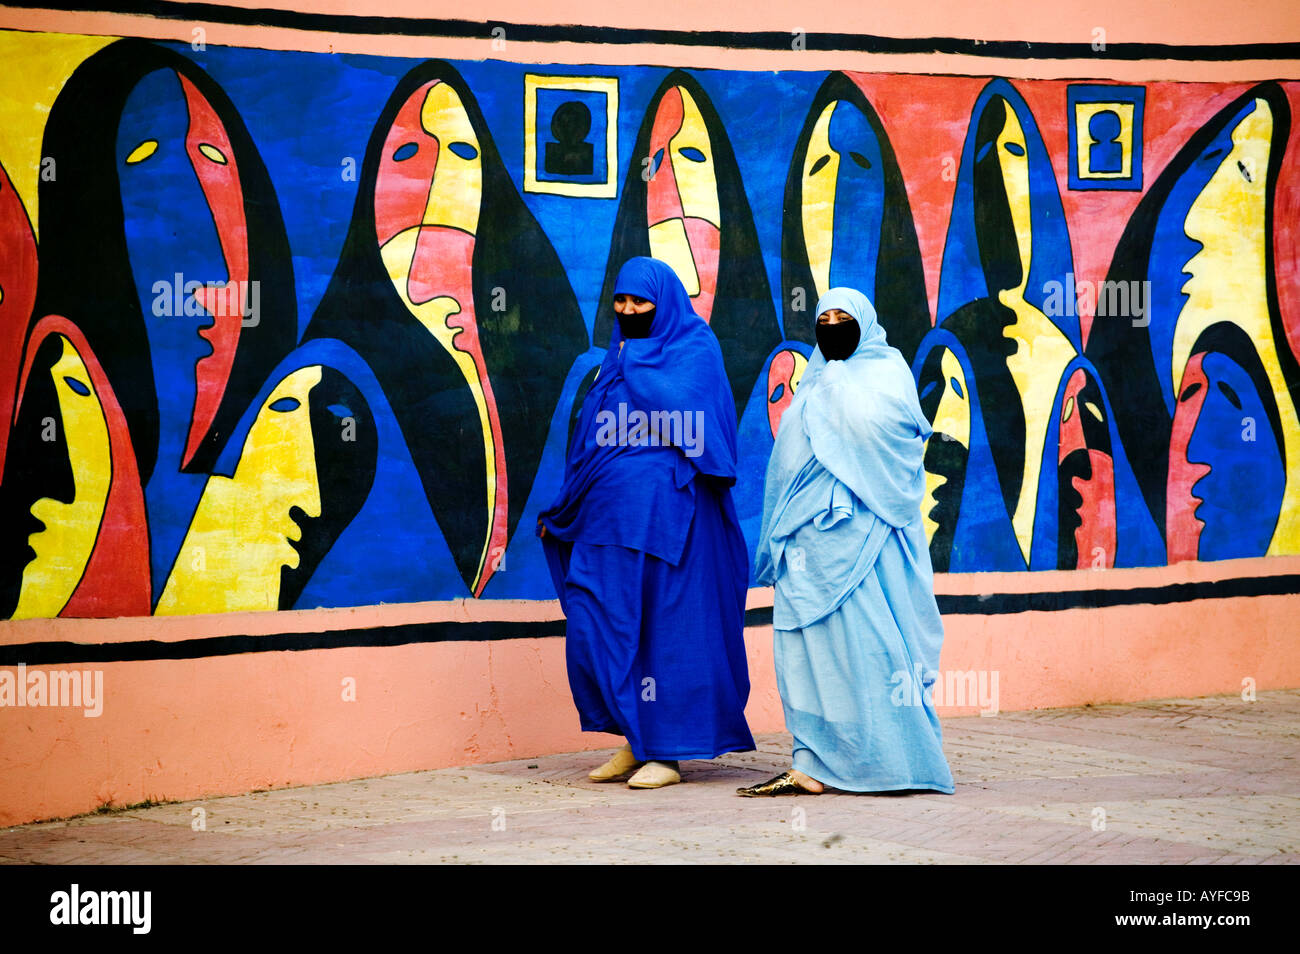 Muslimische Frauen tragen traditionelle Tschador oder Nikab vorbeigehen eine bunte Wandgemälde, die Darstellung der muslimischen Frauen Marokko Stockfoto